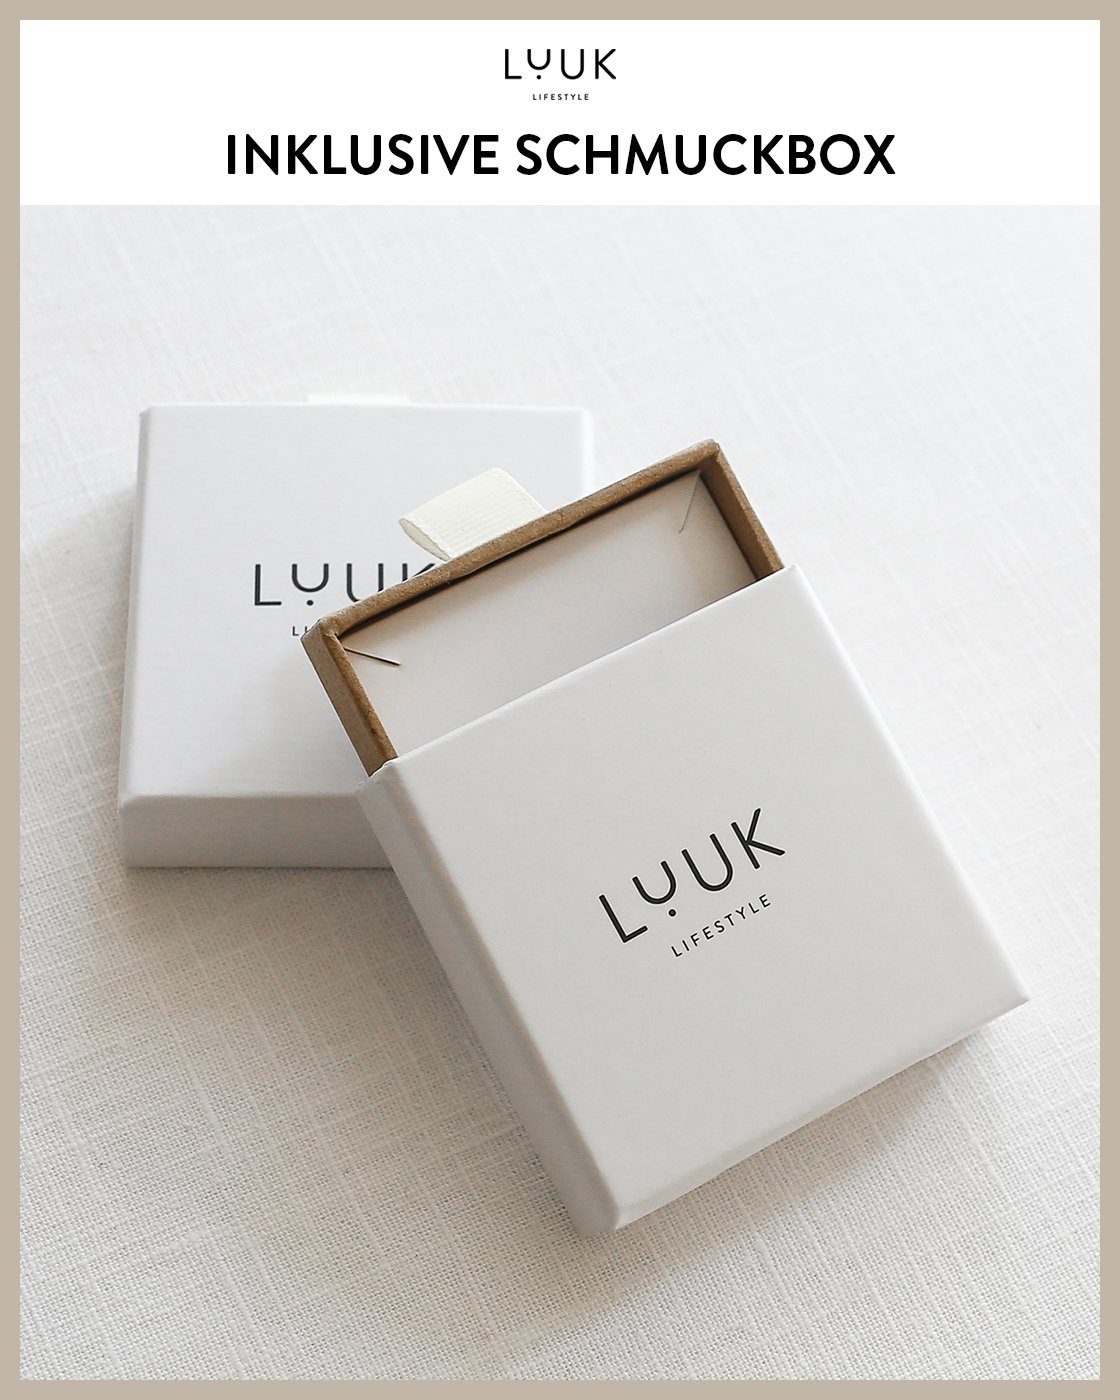 alltagstauglich, LIFESTYLE Paar wasserfest Schmuckbox Viereck, Ohrstecker hautverträglich, Rosé modernes & Design, schöner inklusive LUUK